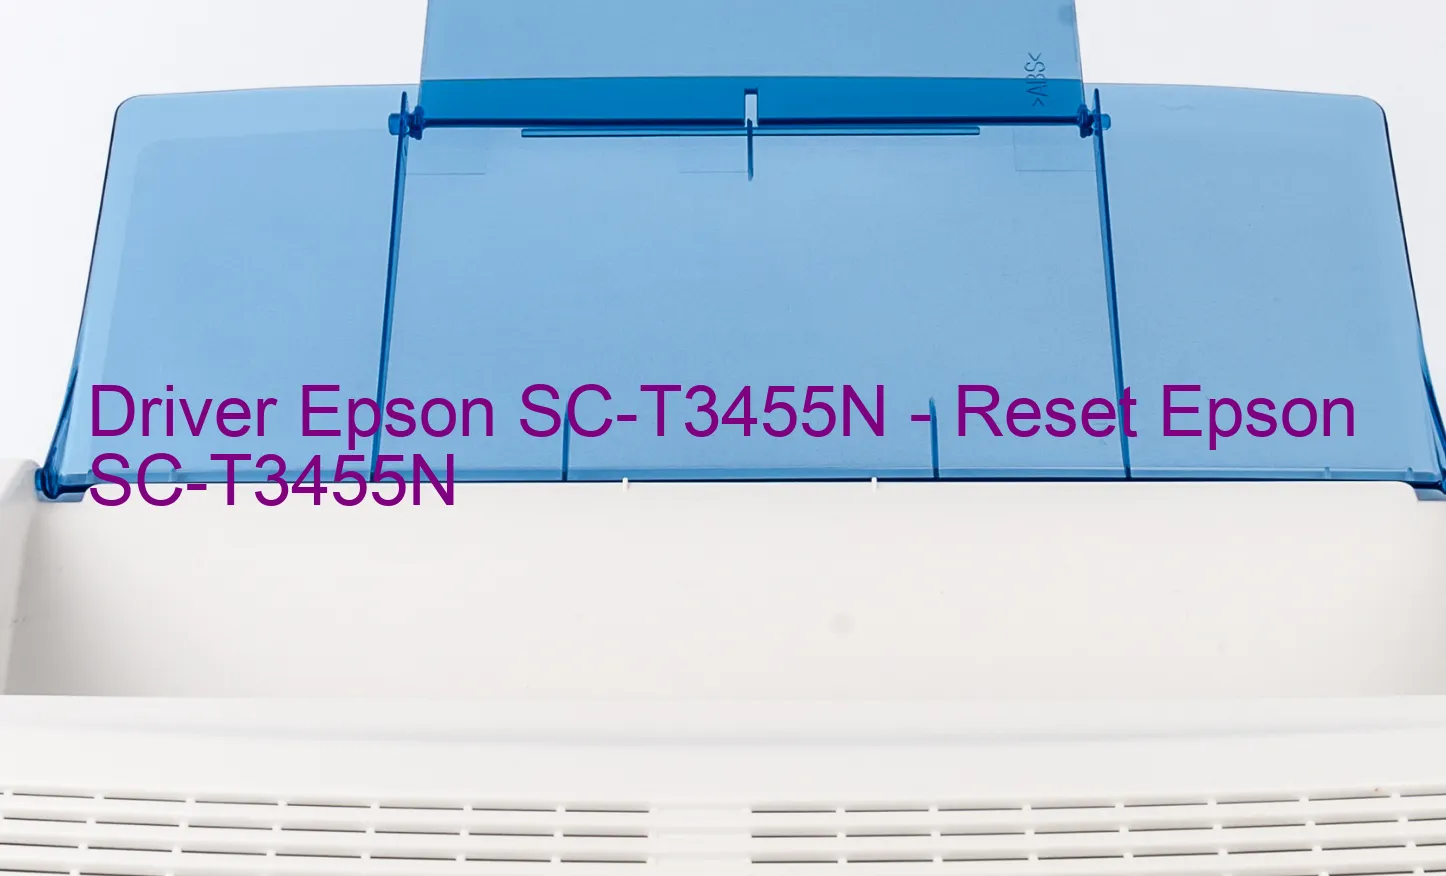 Epson SC-T3455Nのドライバー、Epson SC-T3455Nのリセットソフトウェア